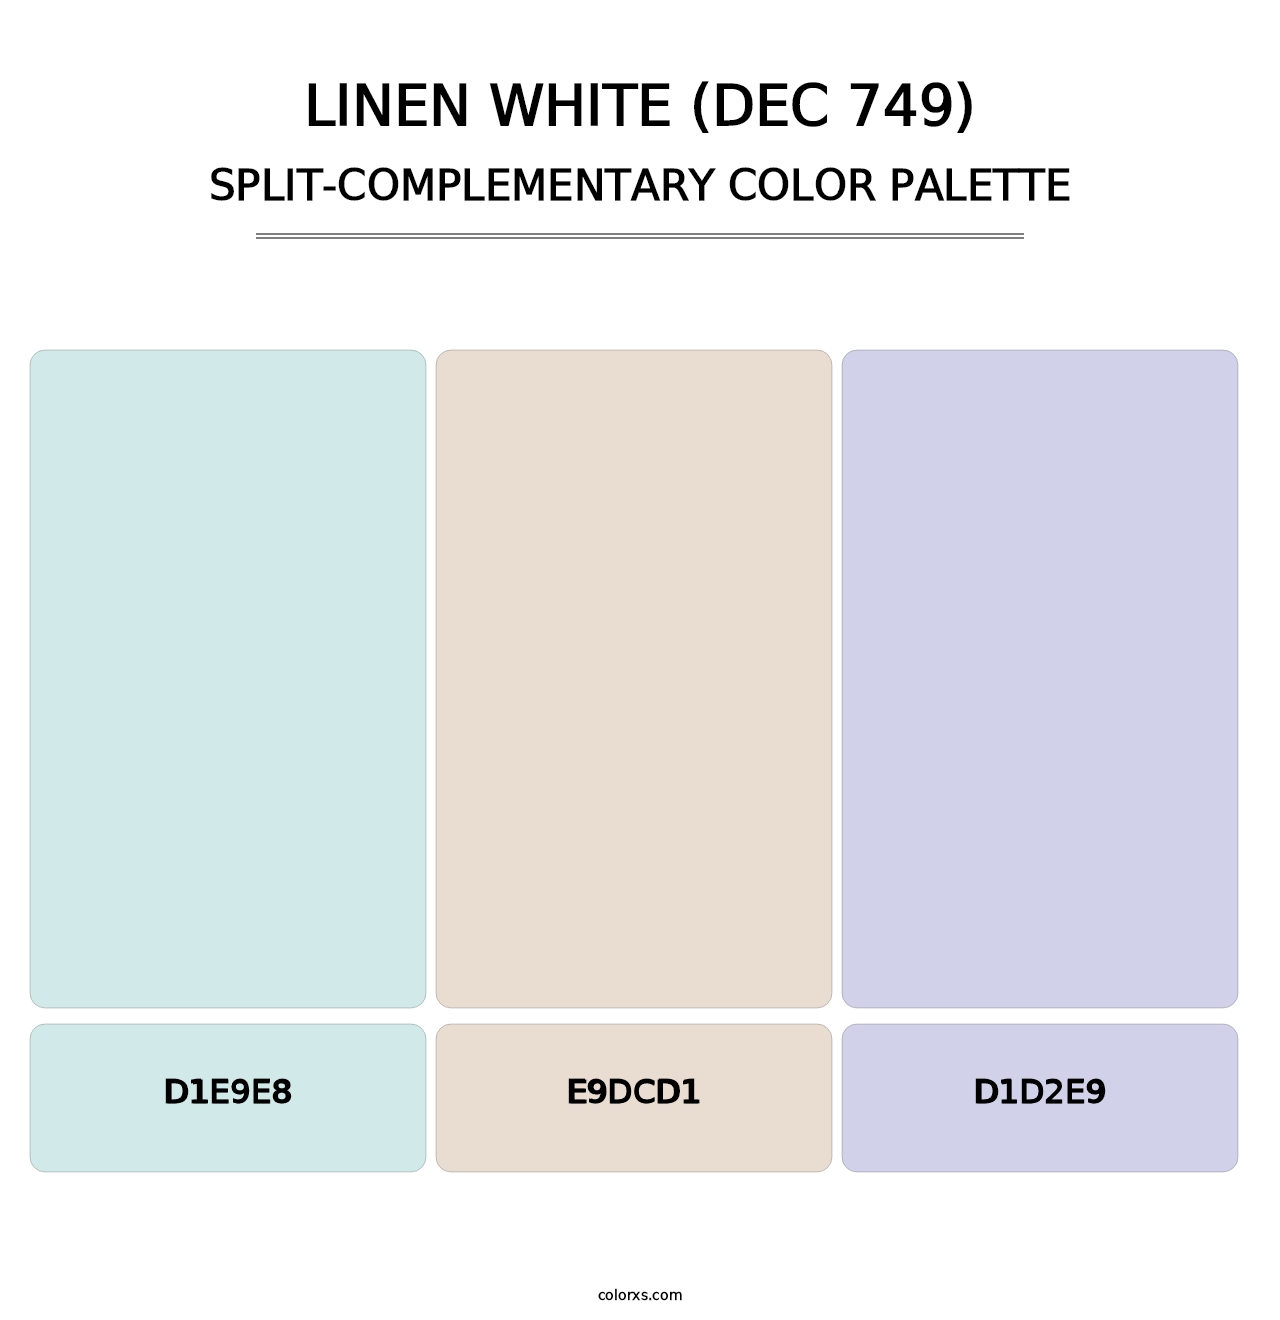 Linen White (DEC 749) - Split-Complementary Color Palette